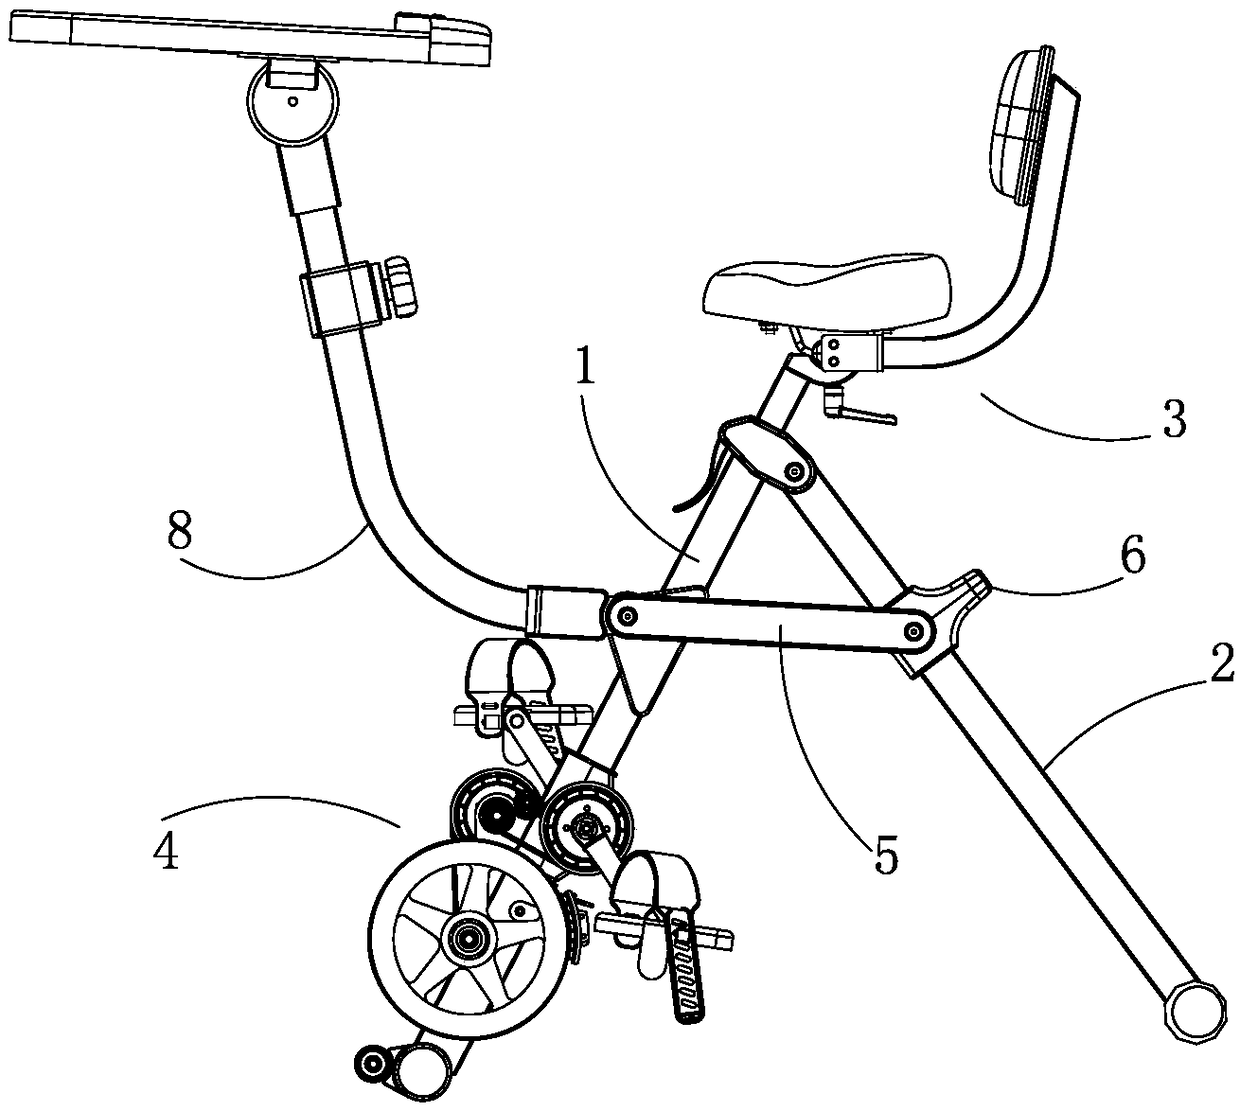 Folding exercise bicycle